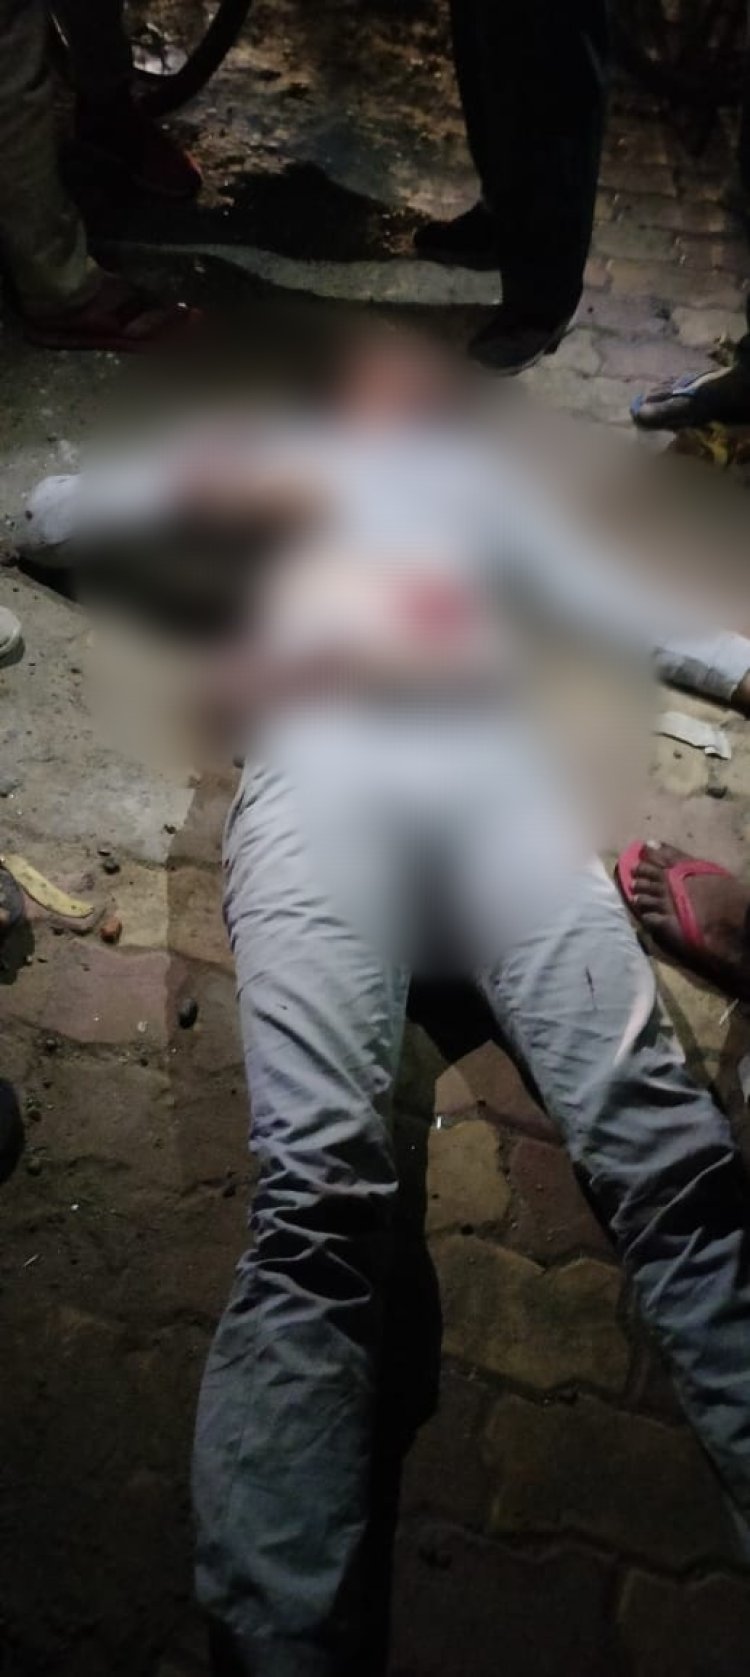 कस्बे के पुरा रोड पर विशेष समुदाय के युवकों ने थार सवार युवकों पर बोला हमला, एक घायल